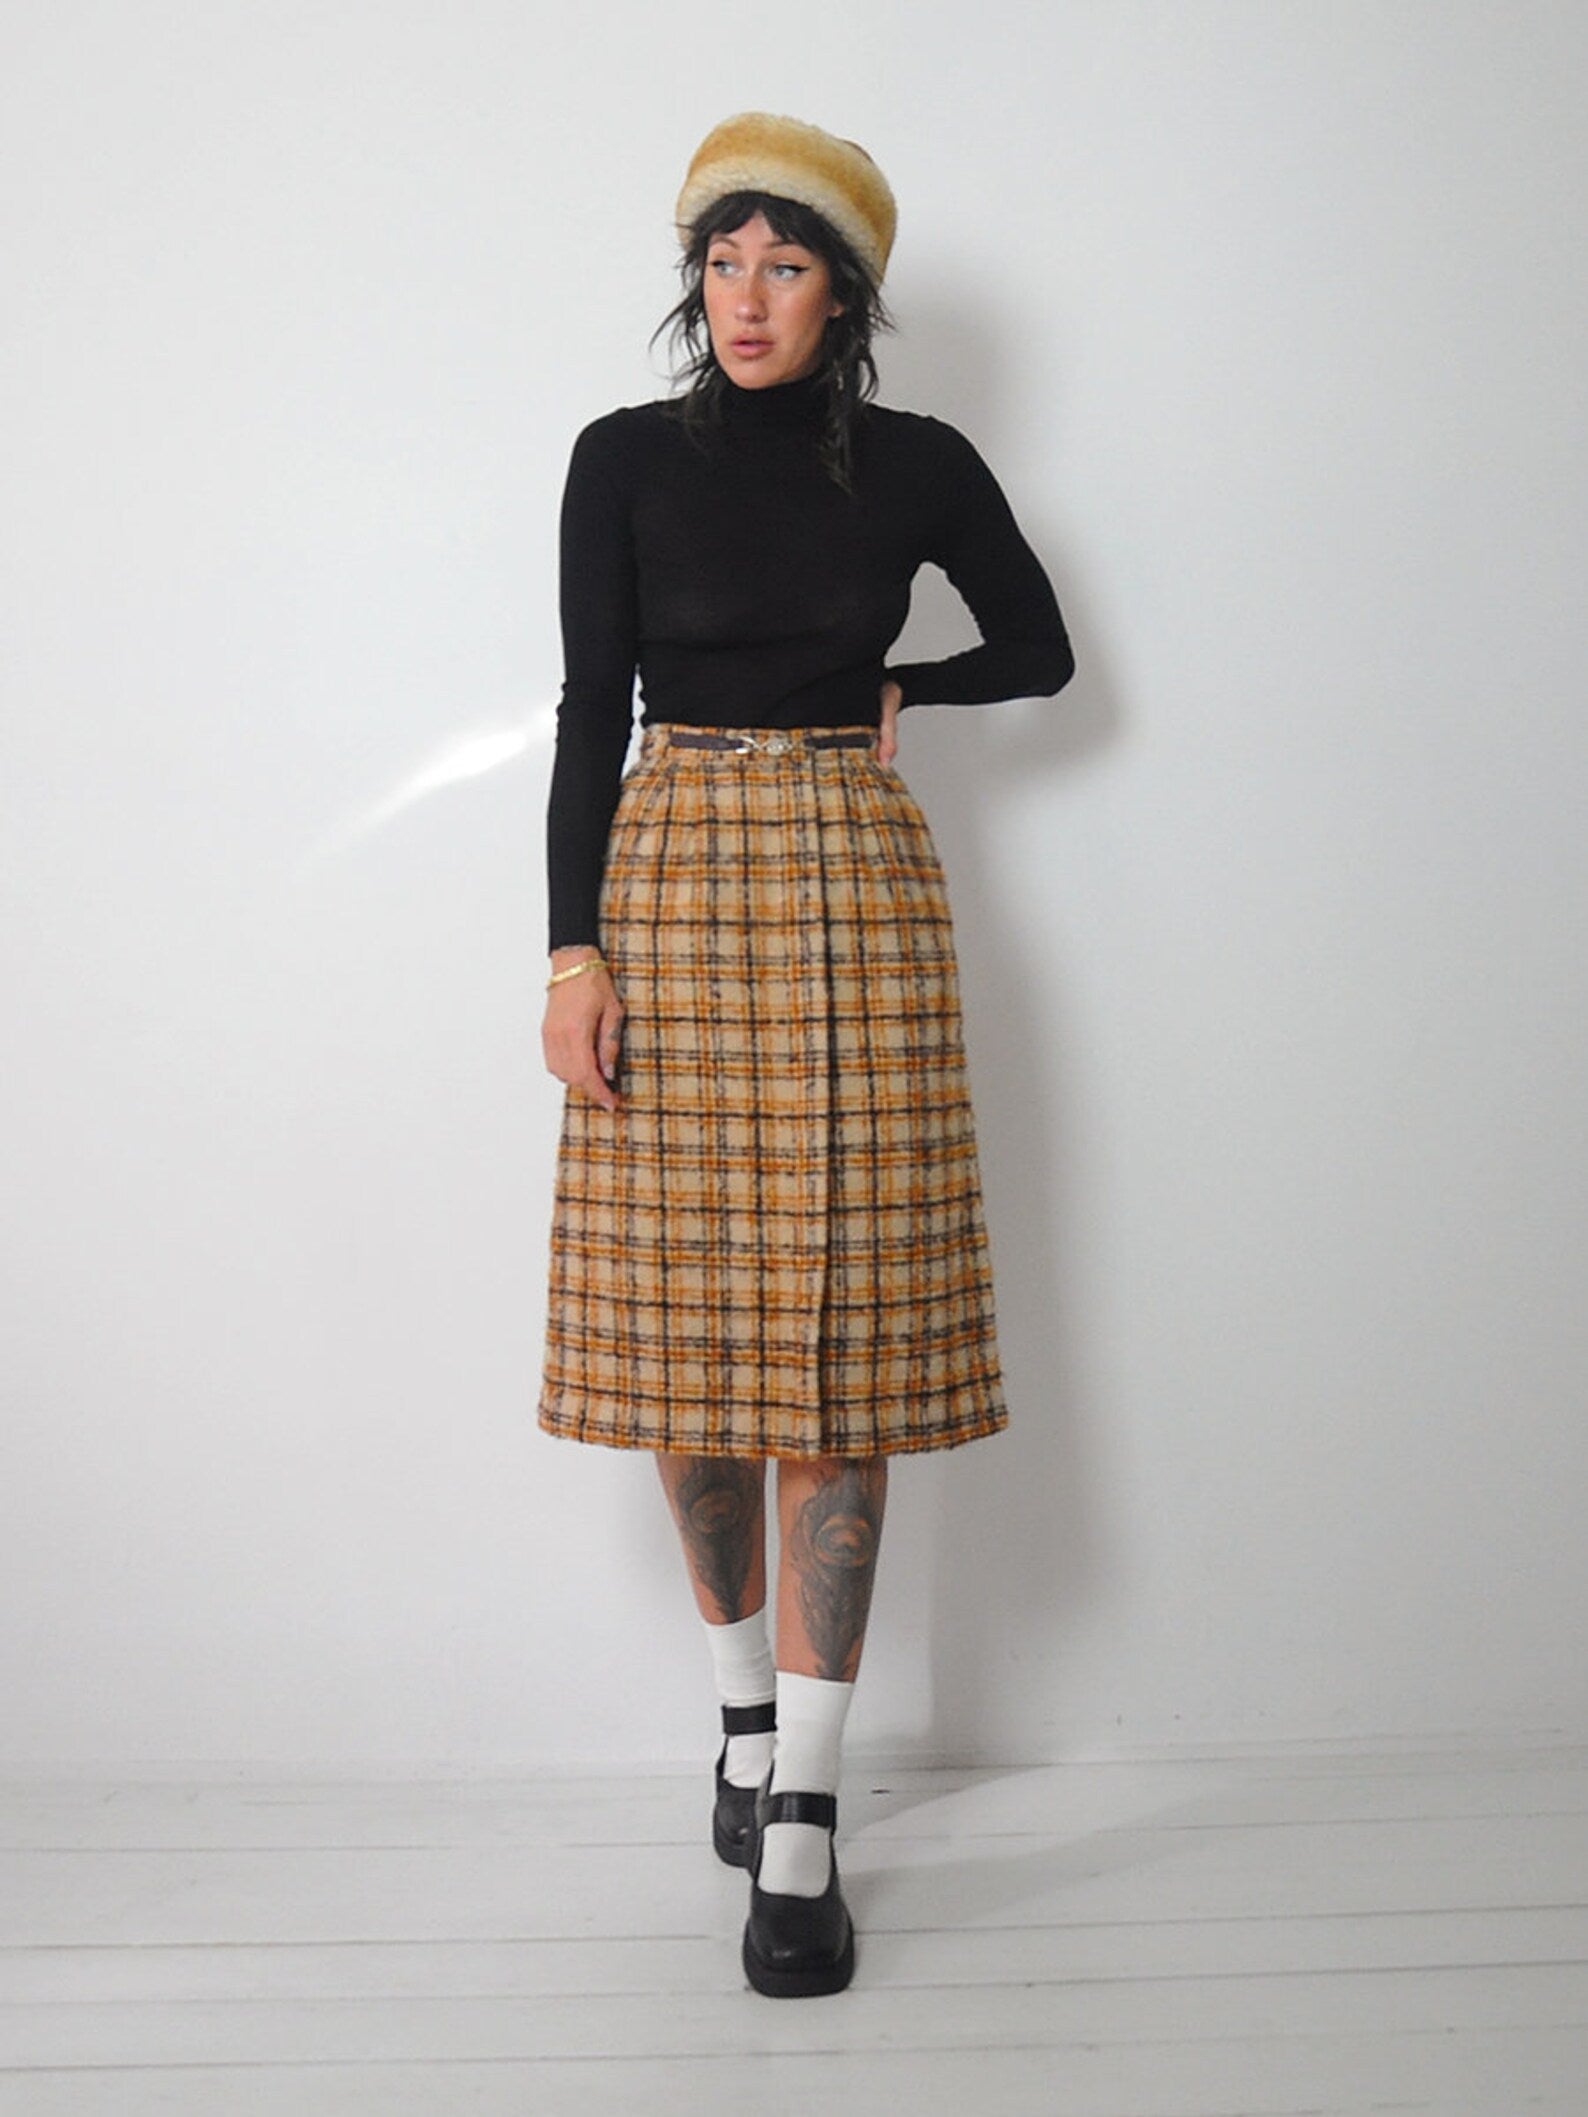 1970's Celine Wool Plaid Skirt